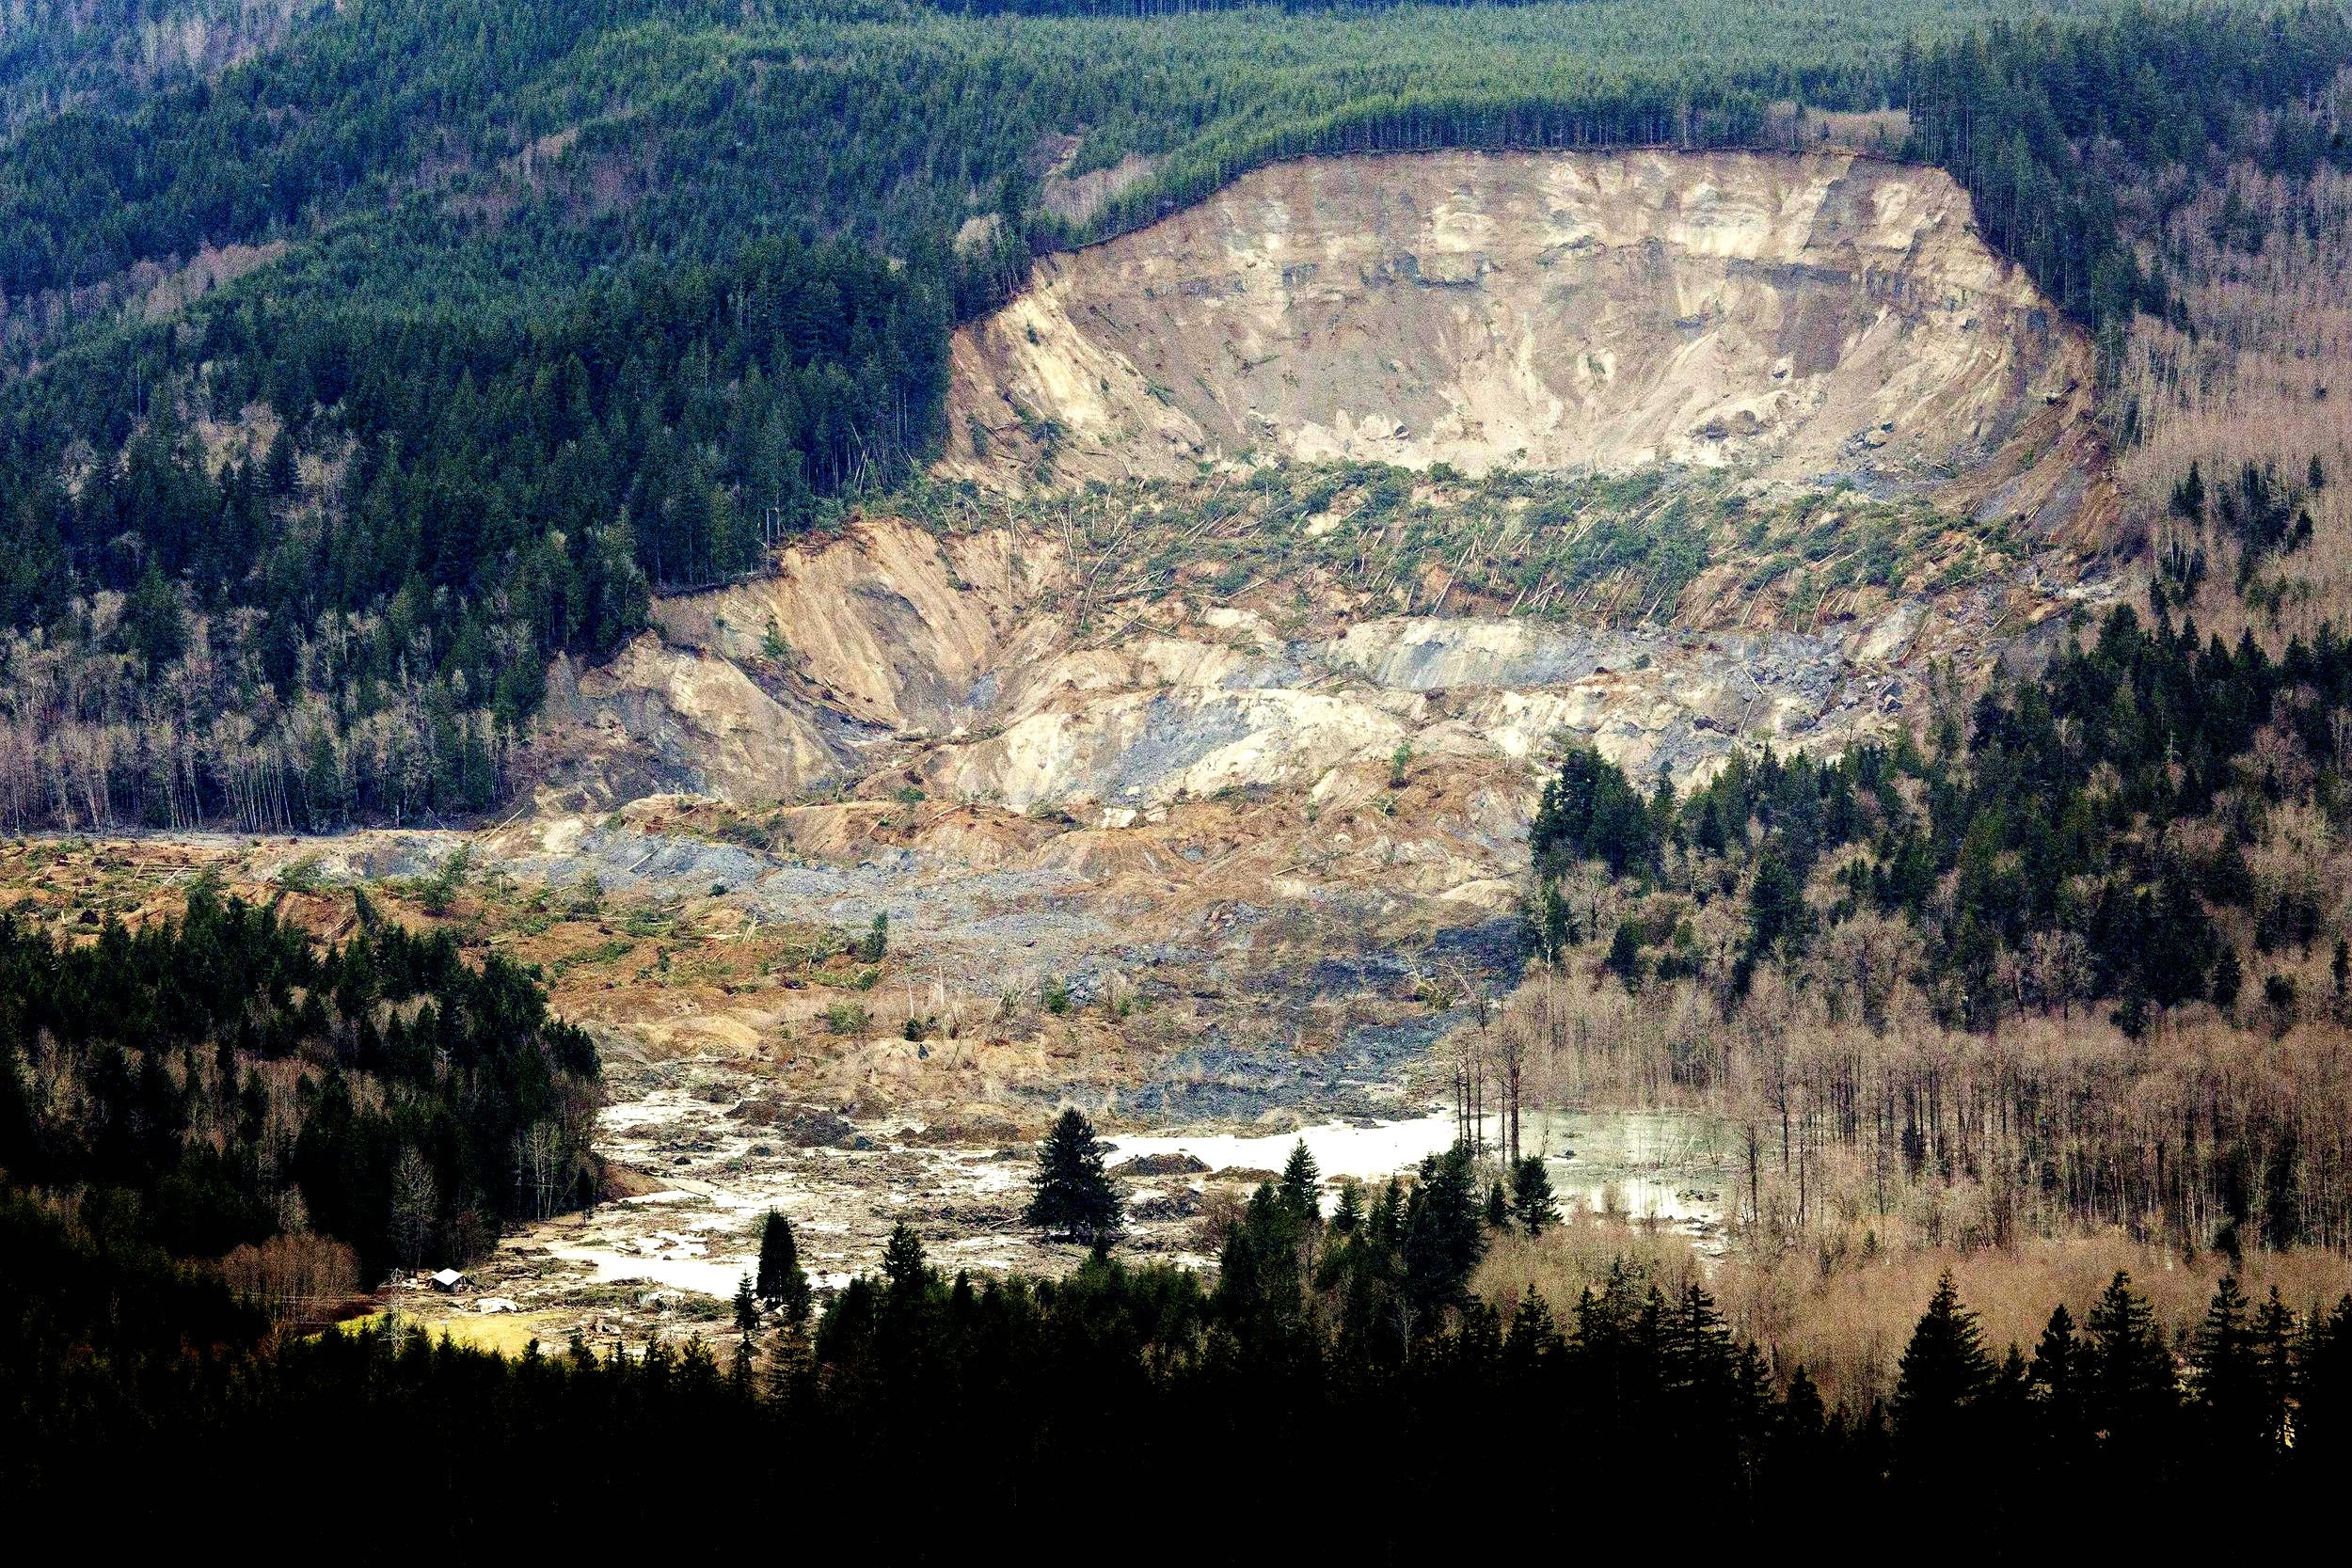 snohomish, Mudslide, Landslide, Nature, Natural, Disaster, Landscape, Forest Wallpaper